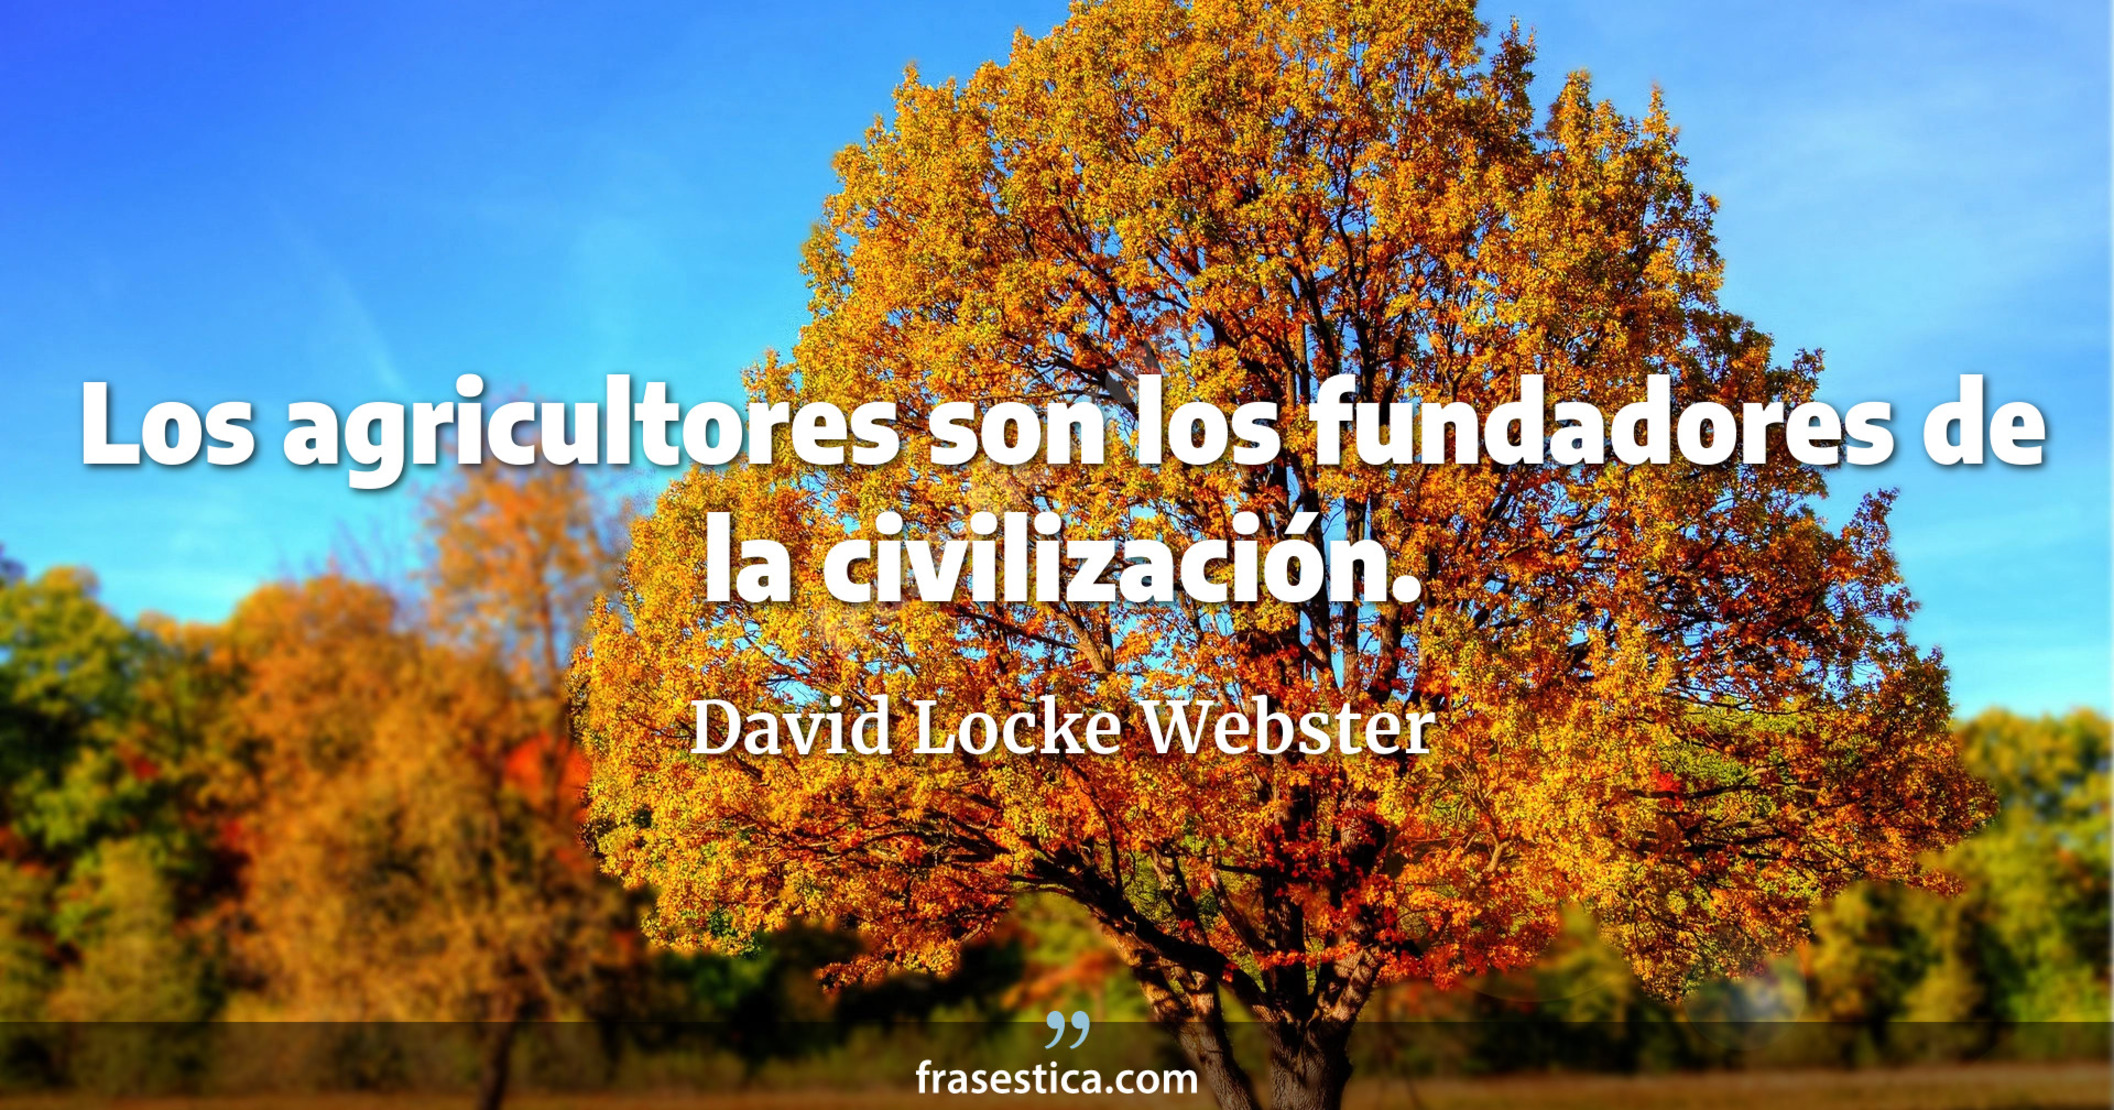 Los agricultores son los fundadores de la civilización. - David Locke Webster